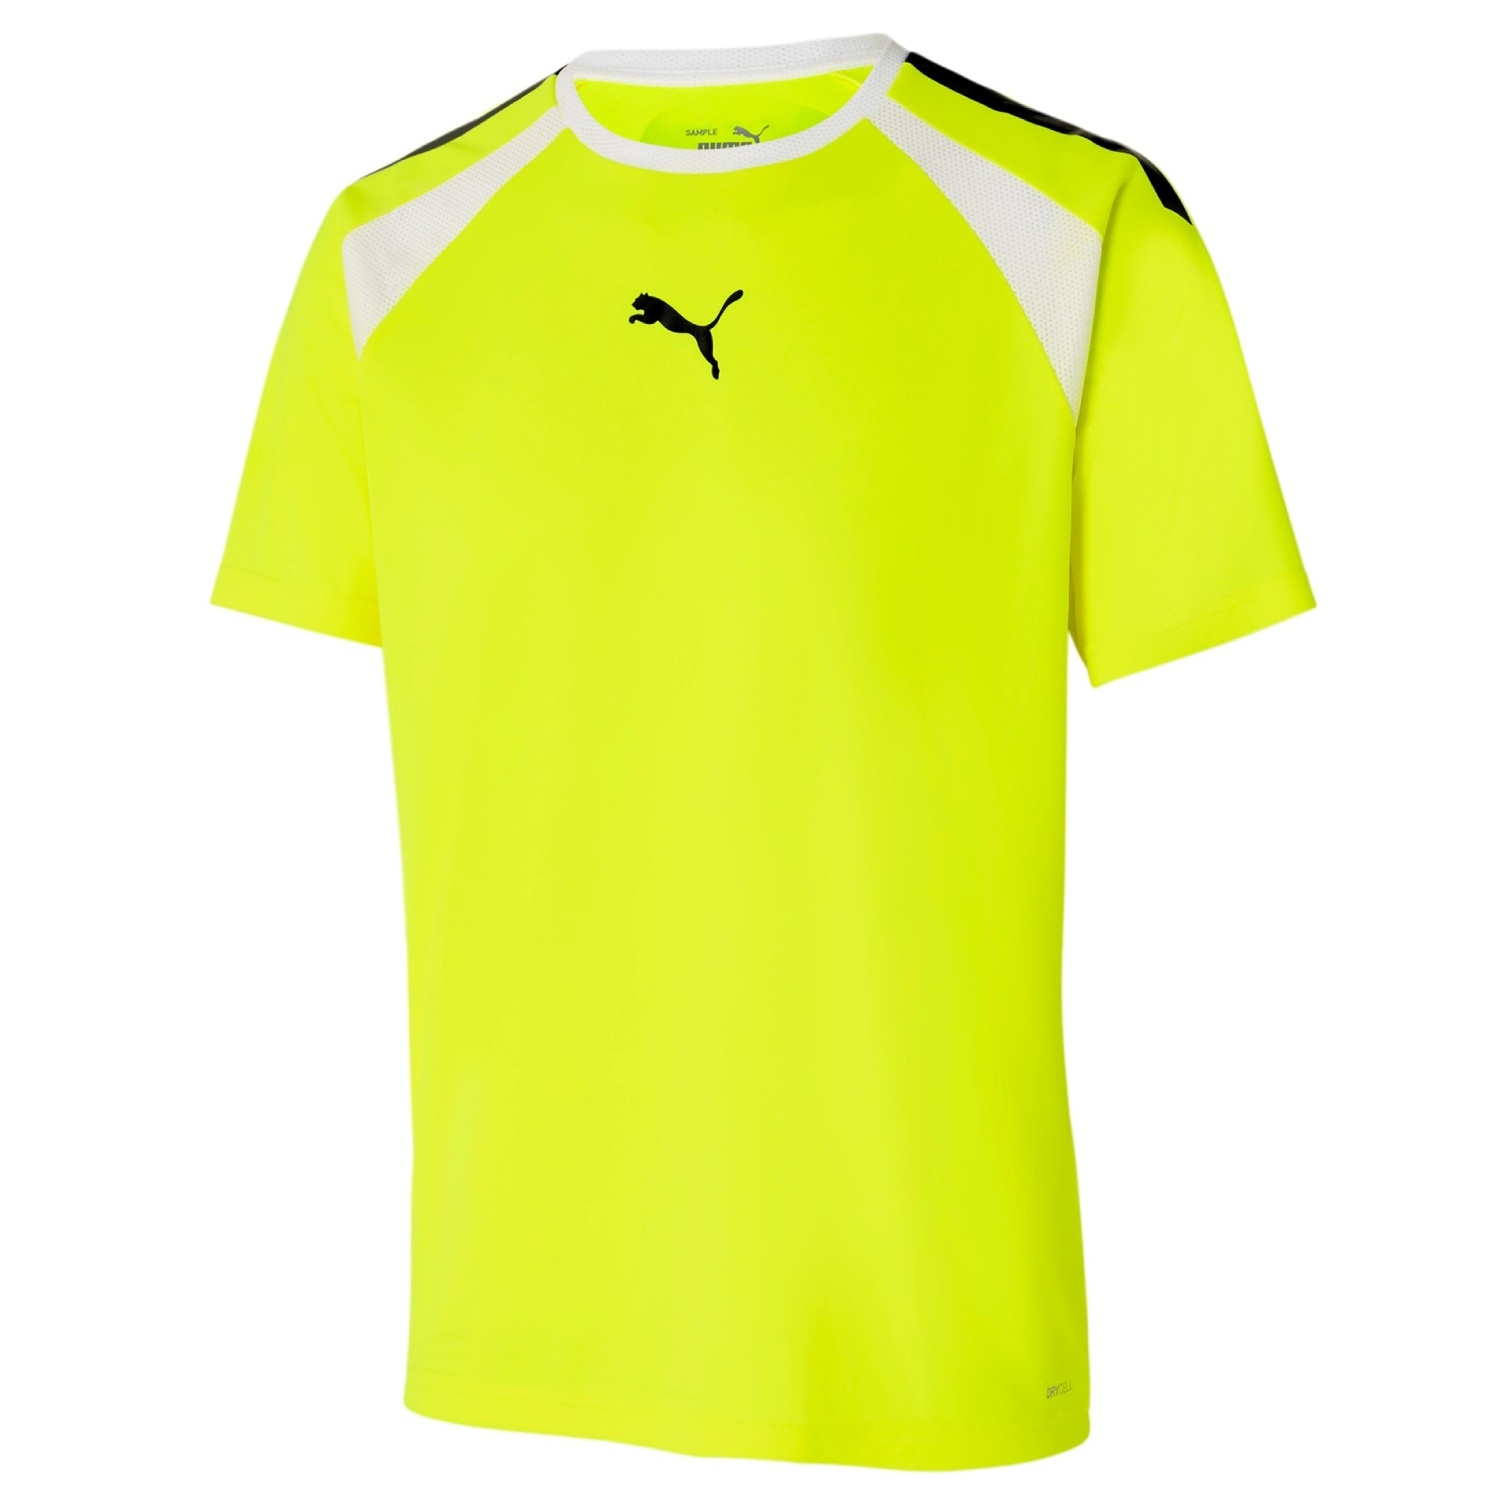 Puma TeamLiga T-Shirt Yellow Allert